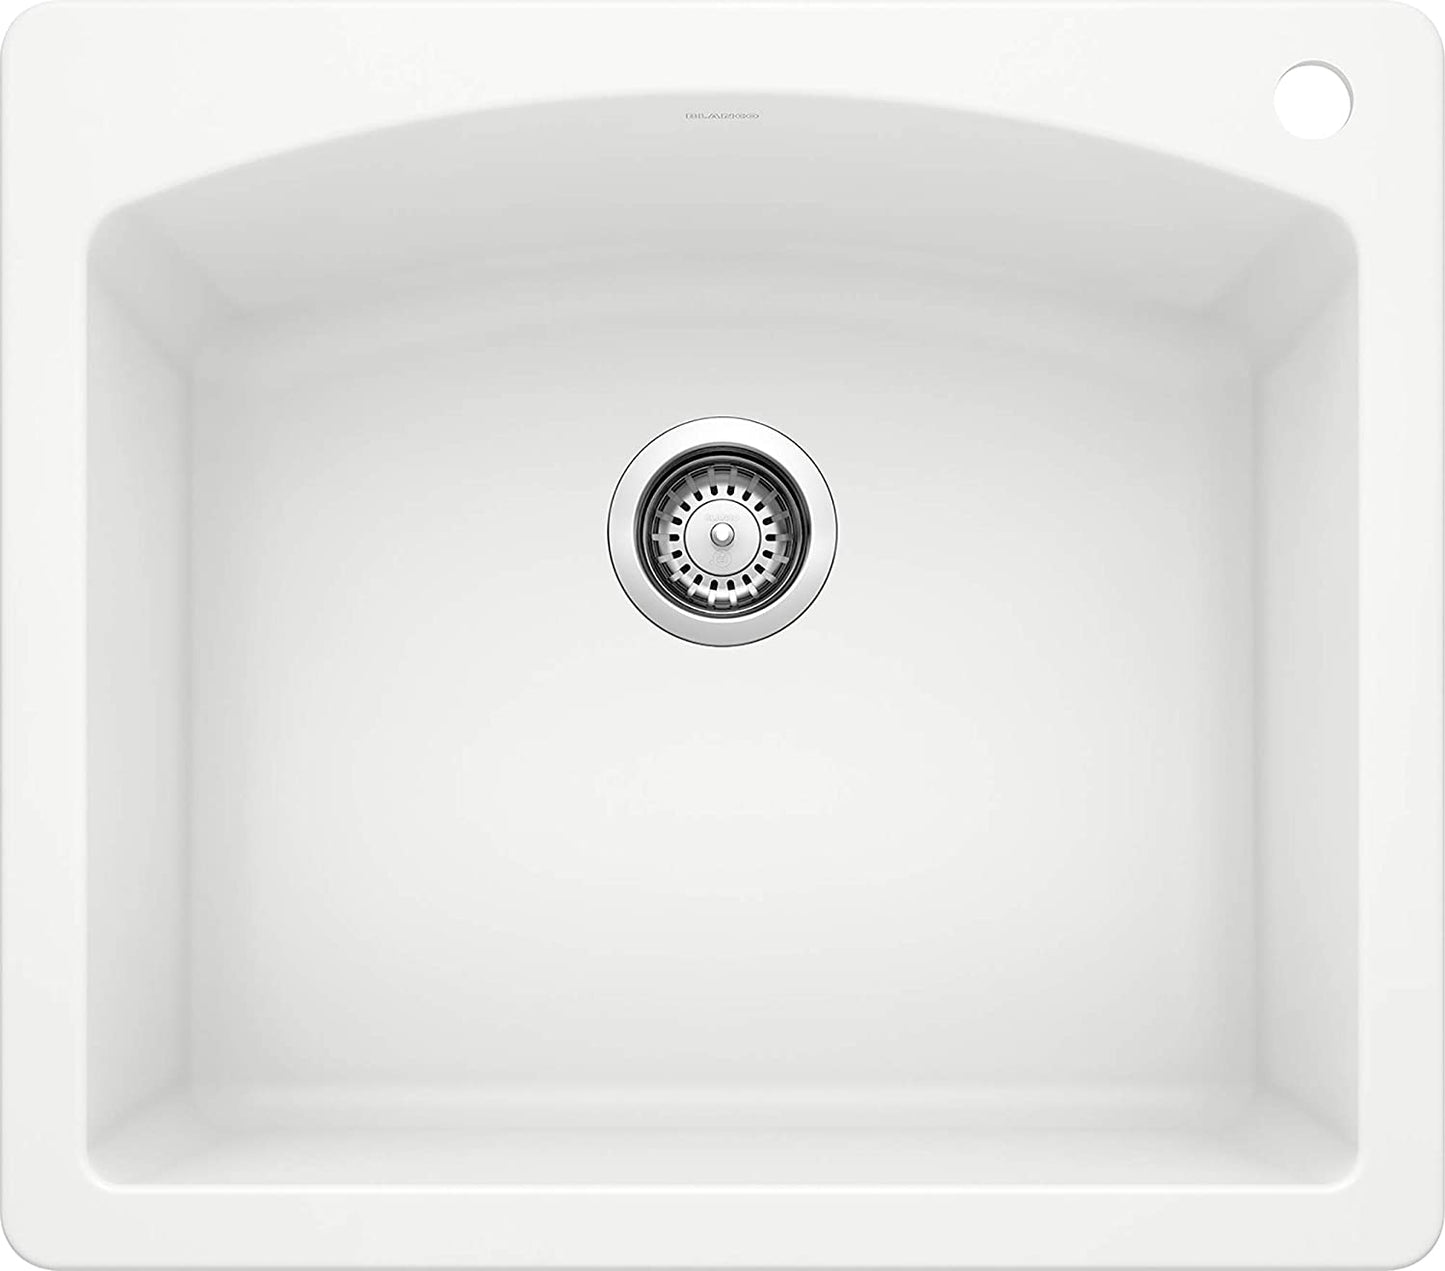 Diamond Bar Drop-In or Undermount Kitchen Sink, 25" X 22" - White